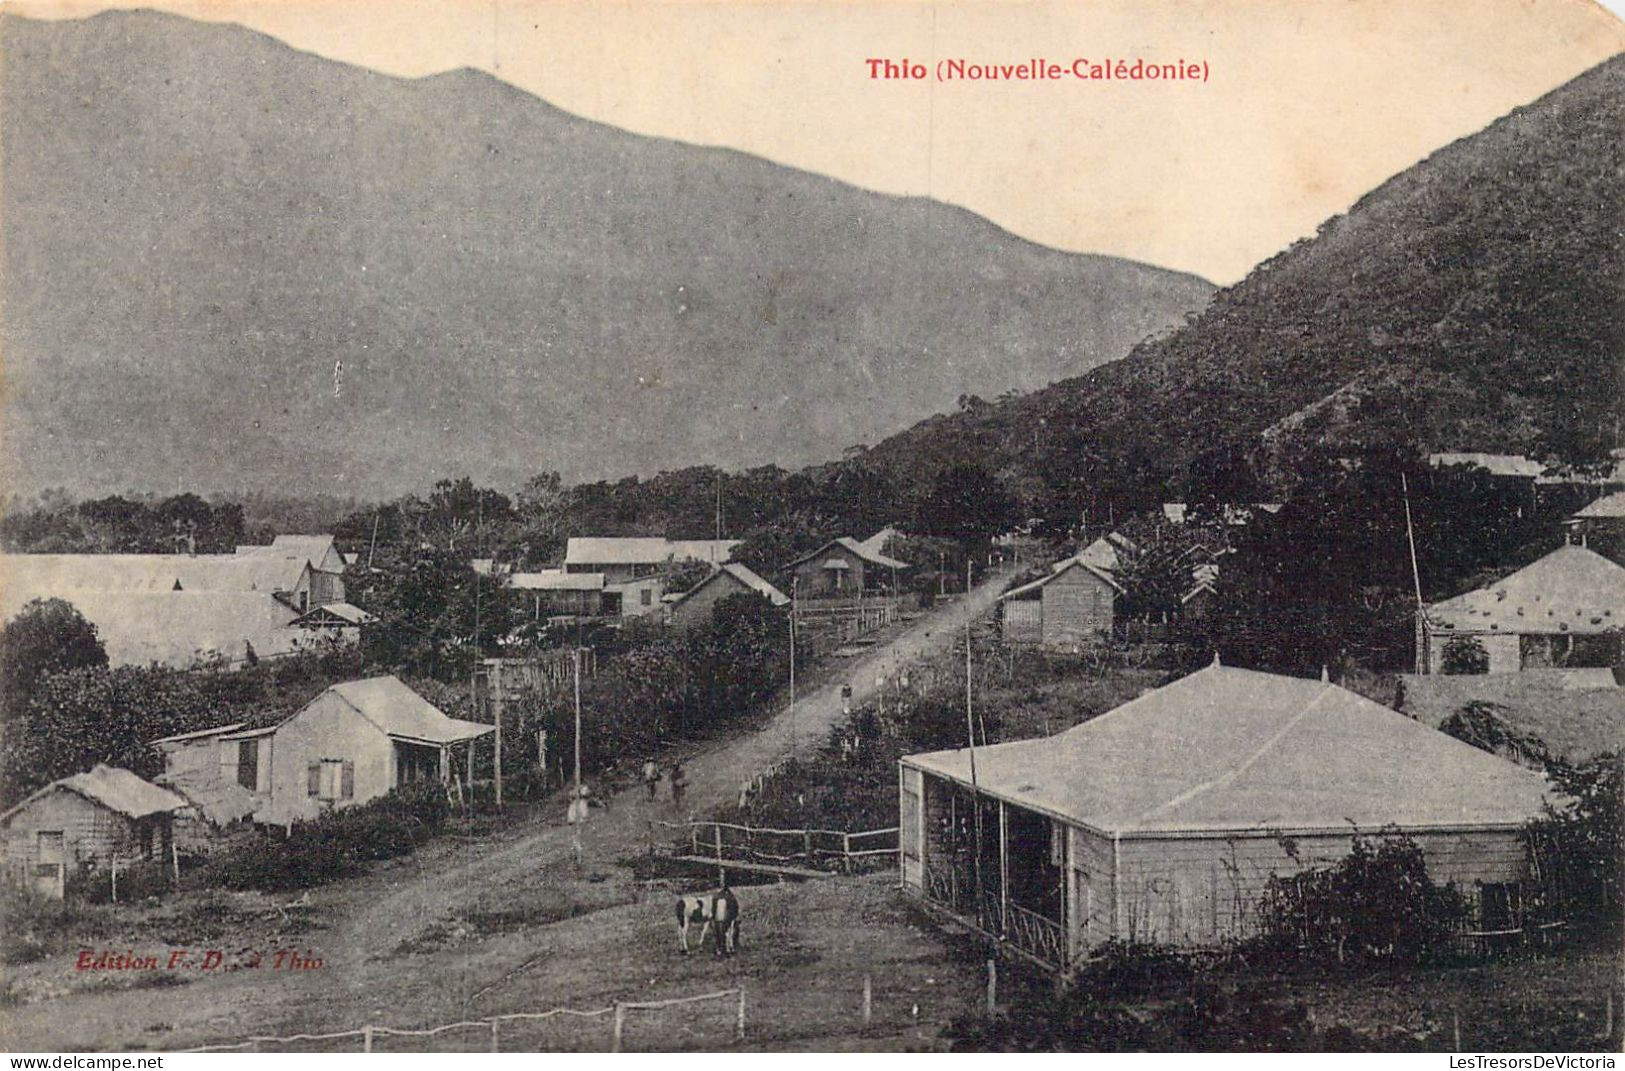 FRANCE - Nouvelle Calédonie - Thio - Carte Postale Ancienne - Nouvelle Calédonie